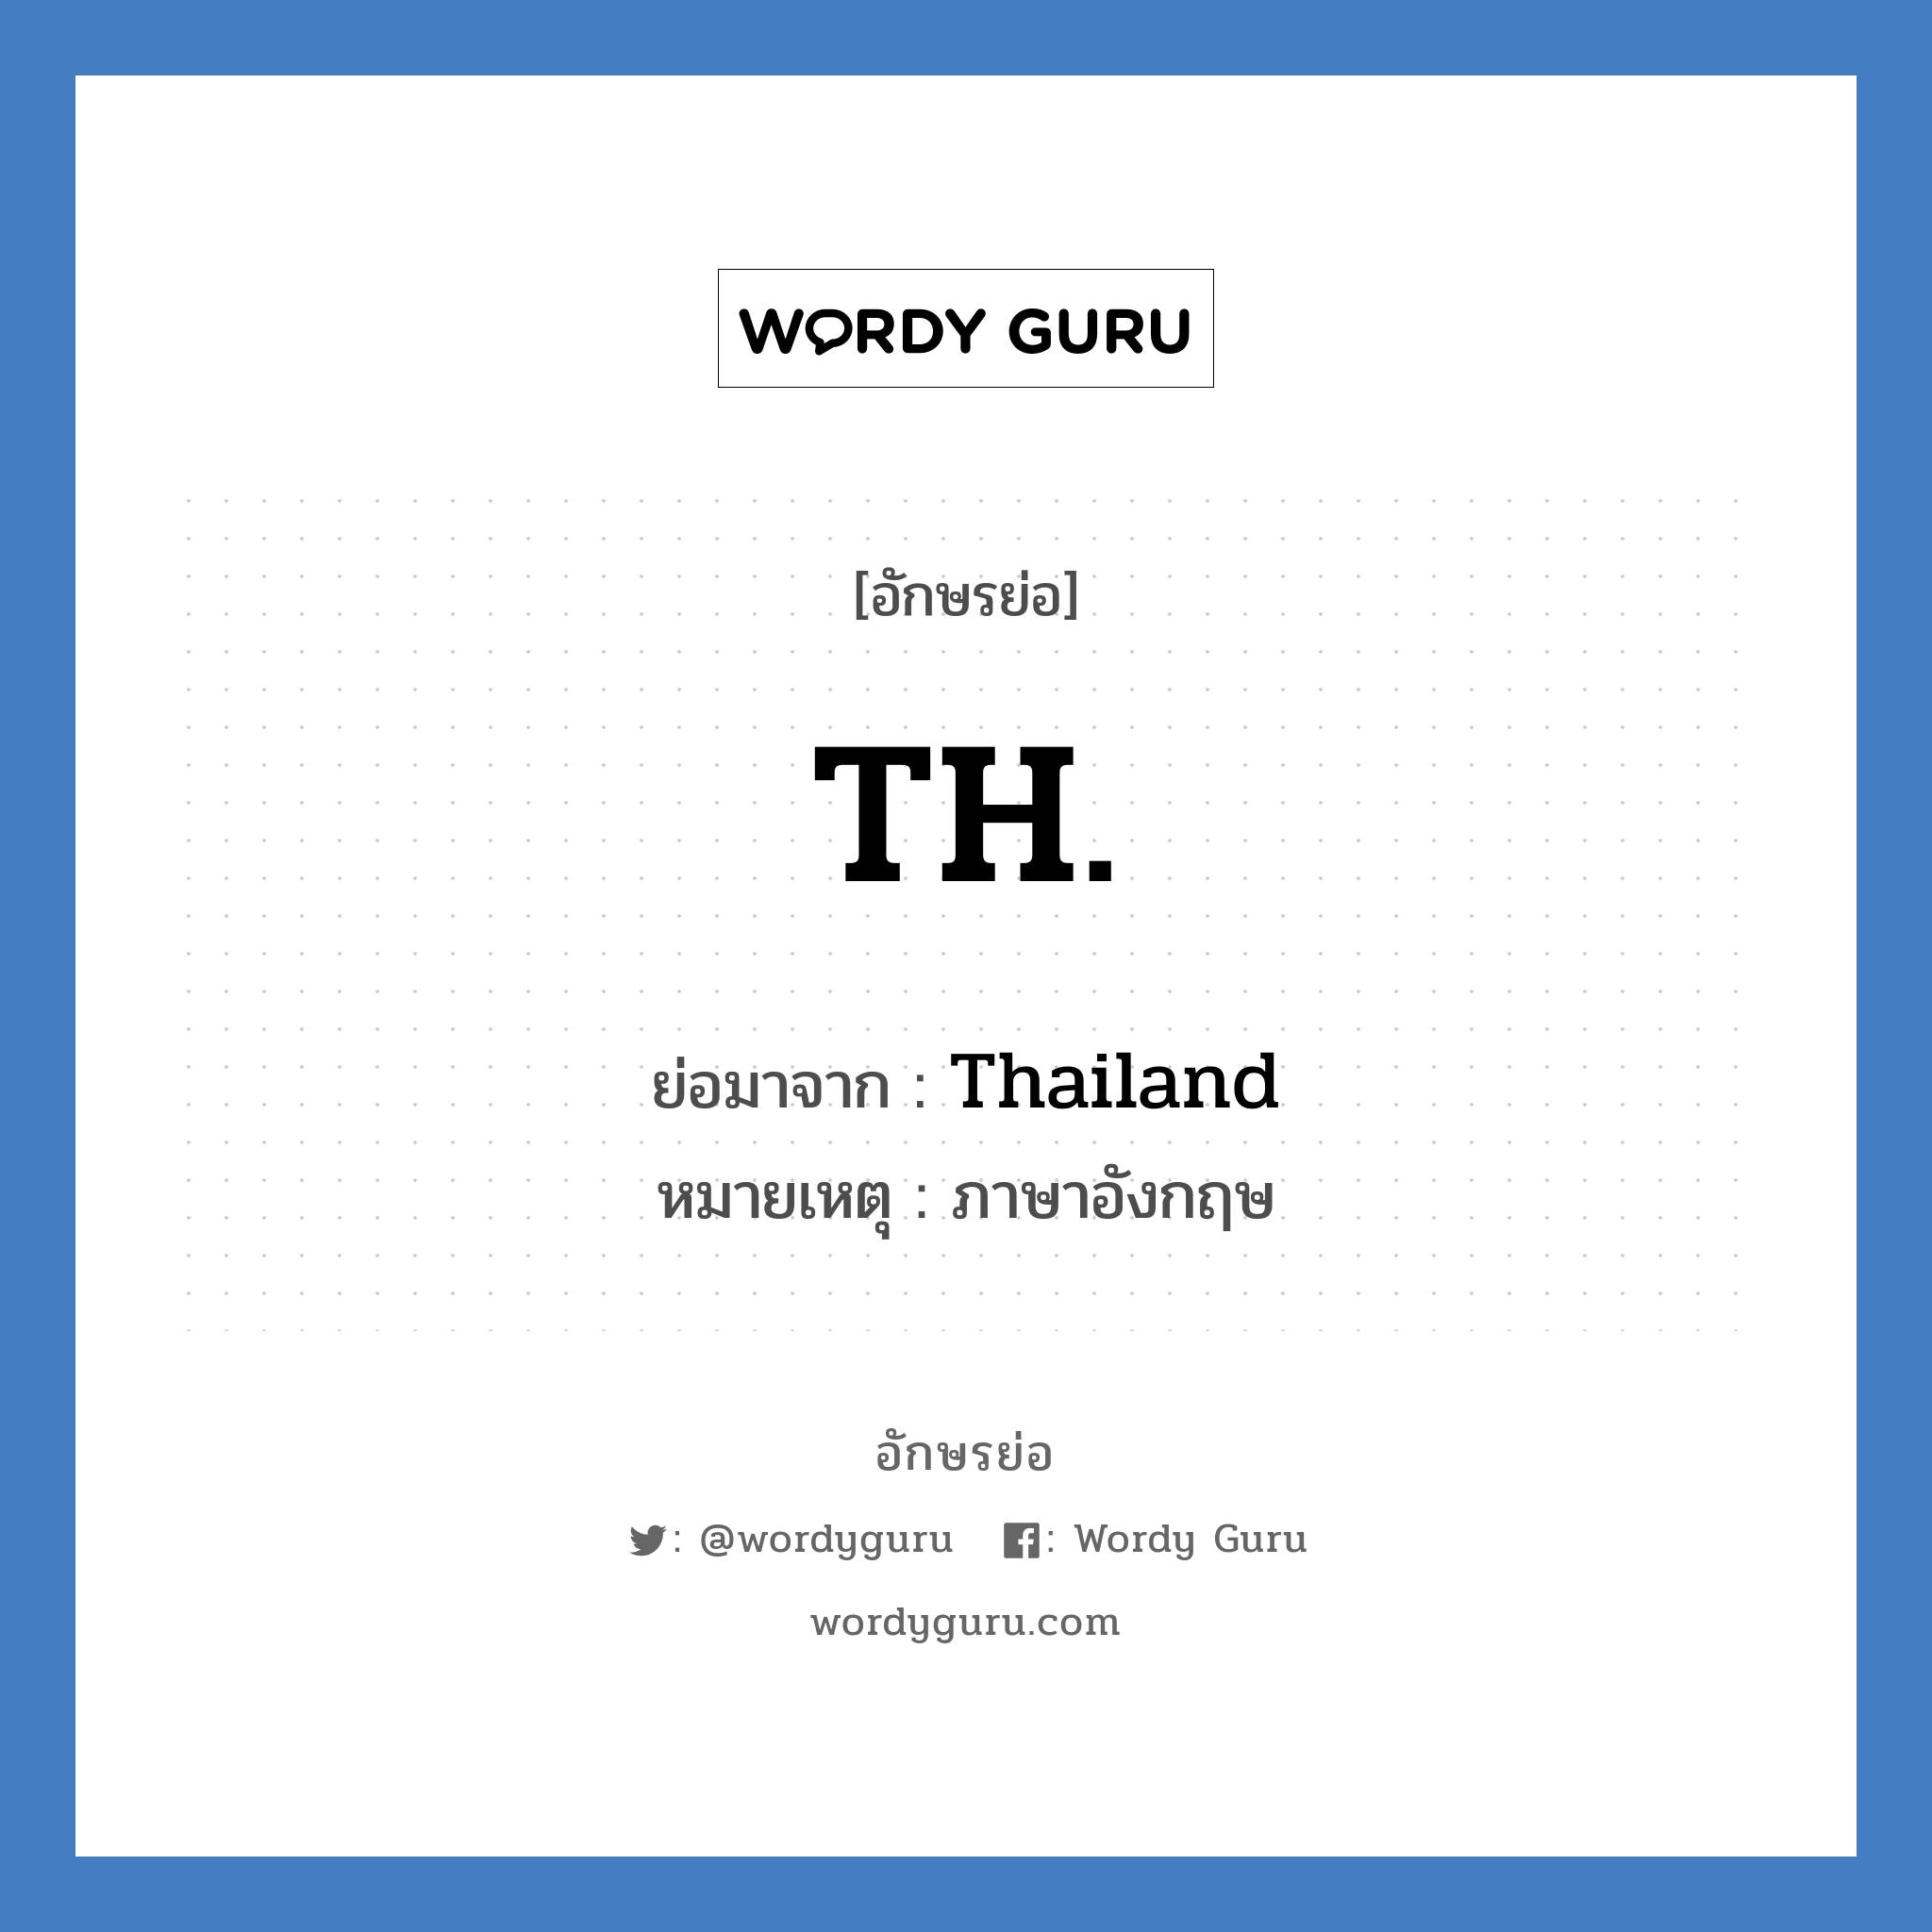 Thailand คำย่อคือ? แปลว่า?, อักษรย่อ Thailand ย่อมาจาก TH. หมายเหตุ ภาษาอังกฤษ